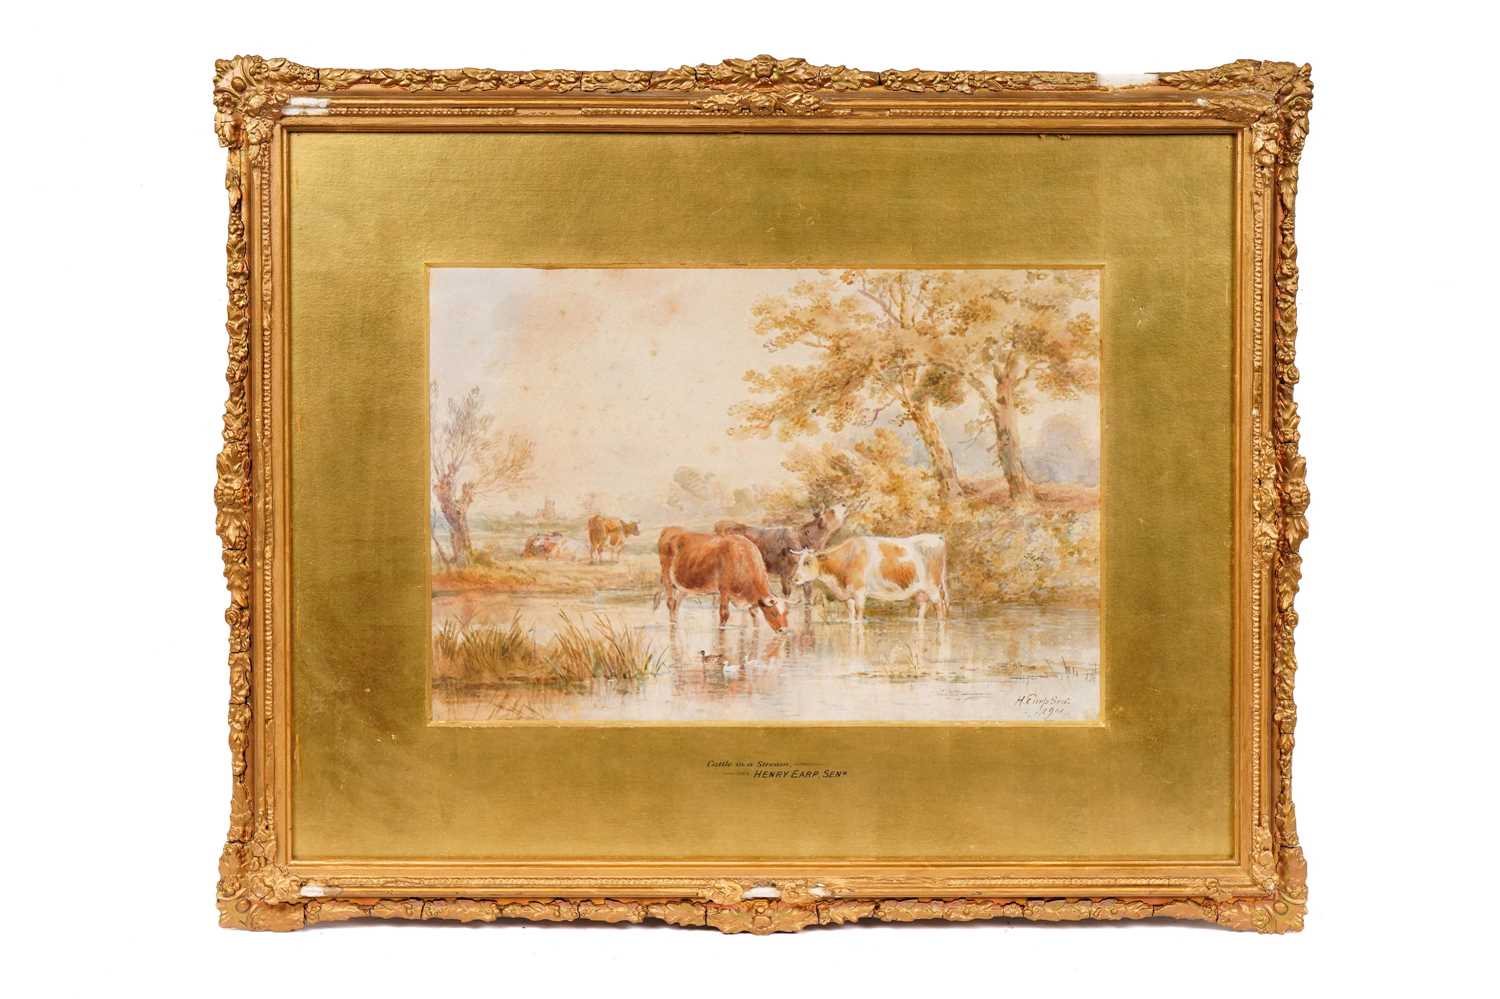 Henry Earp Snr - Cattle in a Stream | watercolour